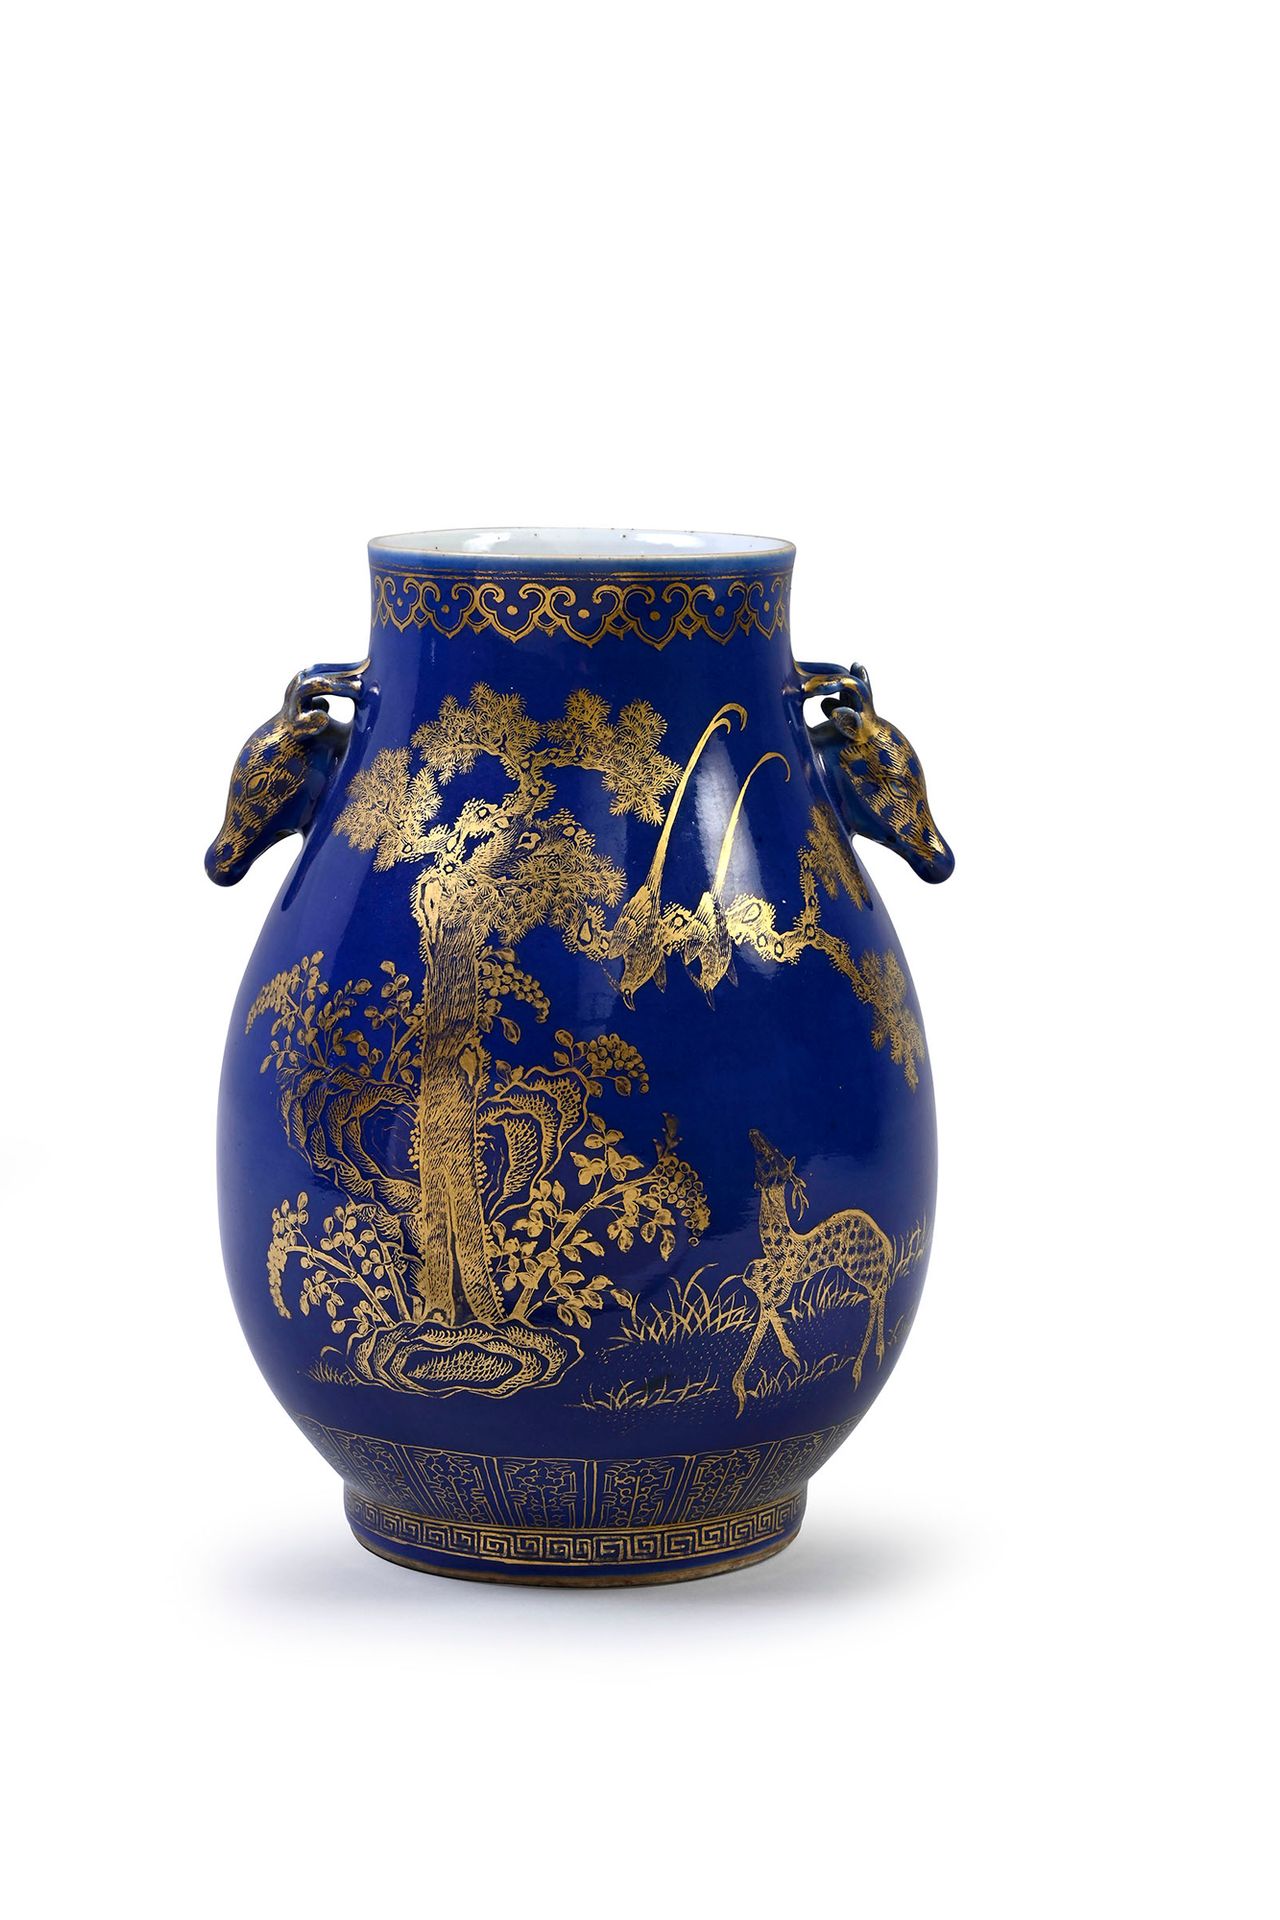 CHINE, XIXe siècle 粉蓝色背景上的金色装饰的瓷质柱形花瓶，表现了外面被植物包围的猴子、鹿、鸟和昆虫。手柄采用了鹿头的造型。底下有铁红色的光绪款&hellip;